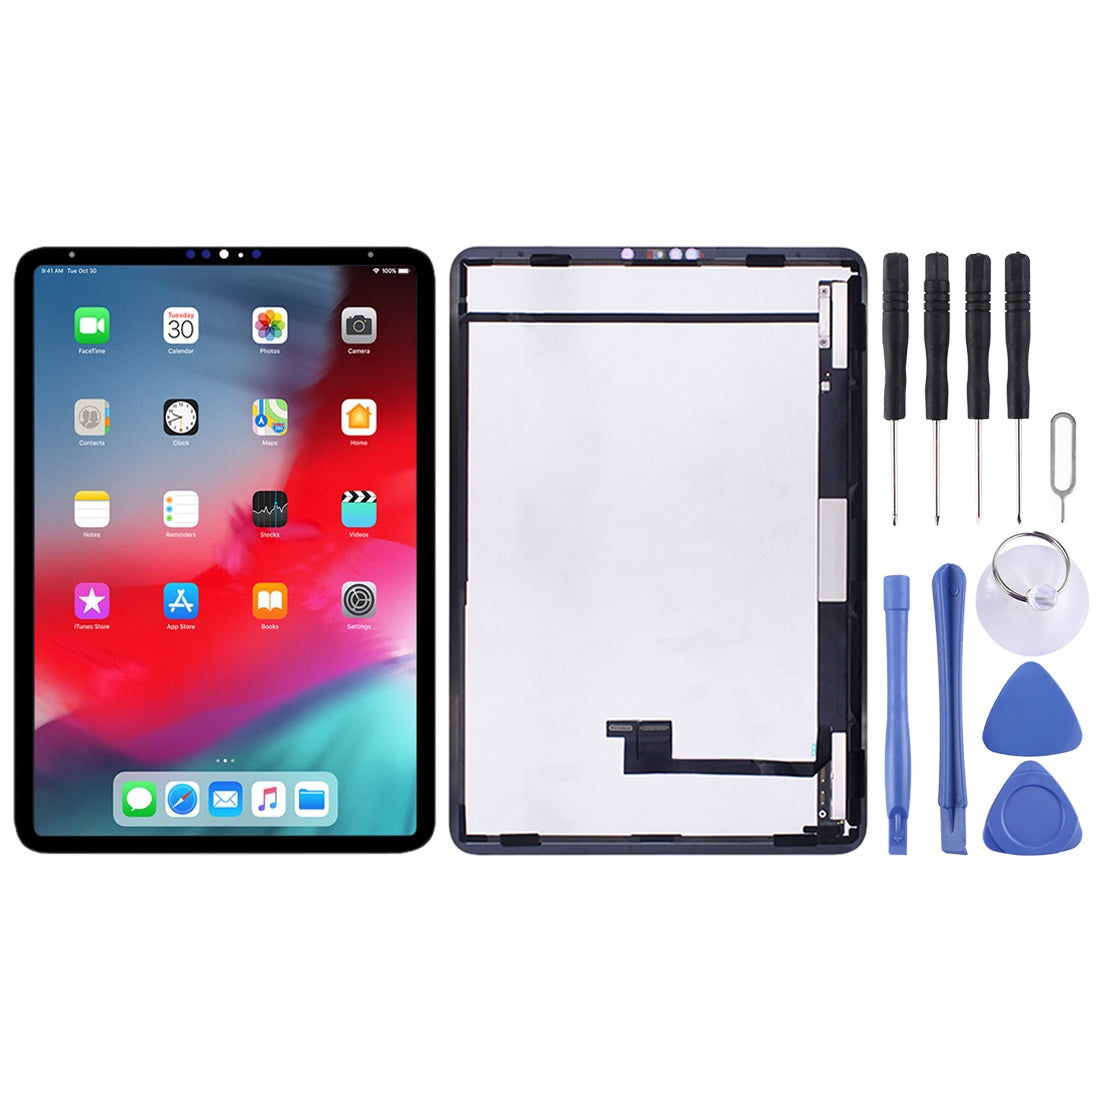 Ecran LCD + Tactile Apple iPad Pro 11 (2018) A1980 A2013 A1934 A1979 Noir